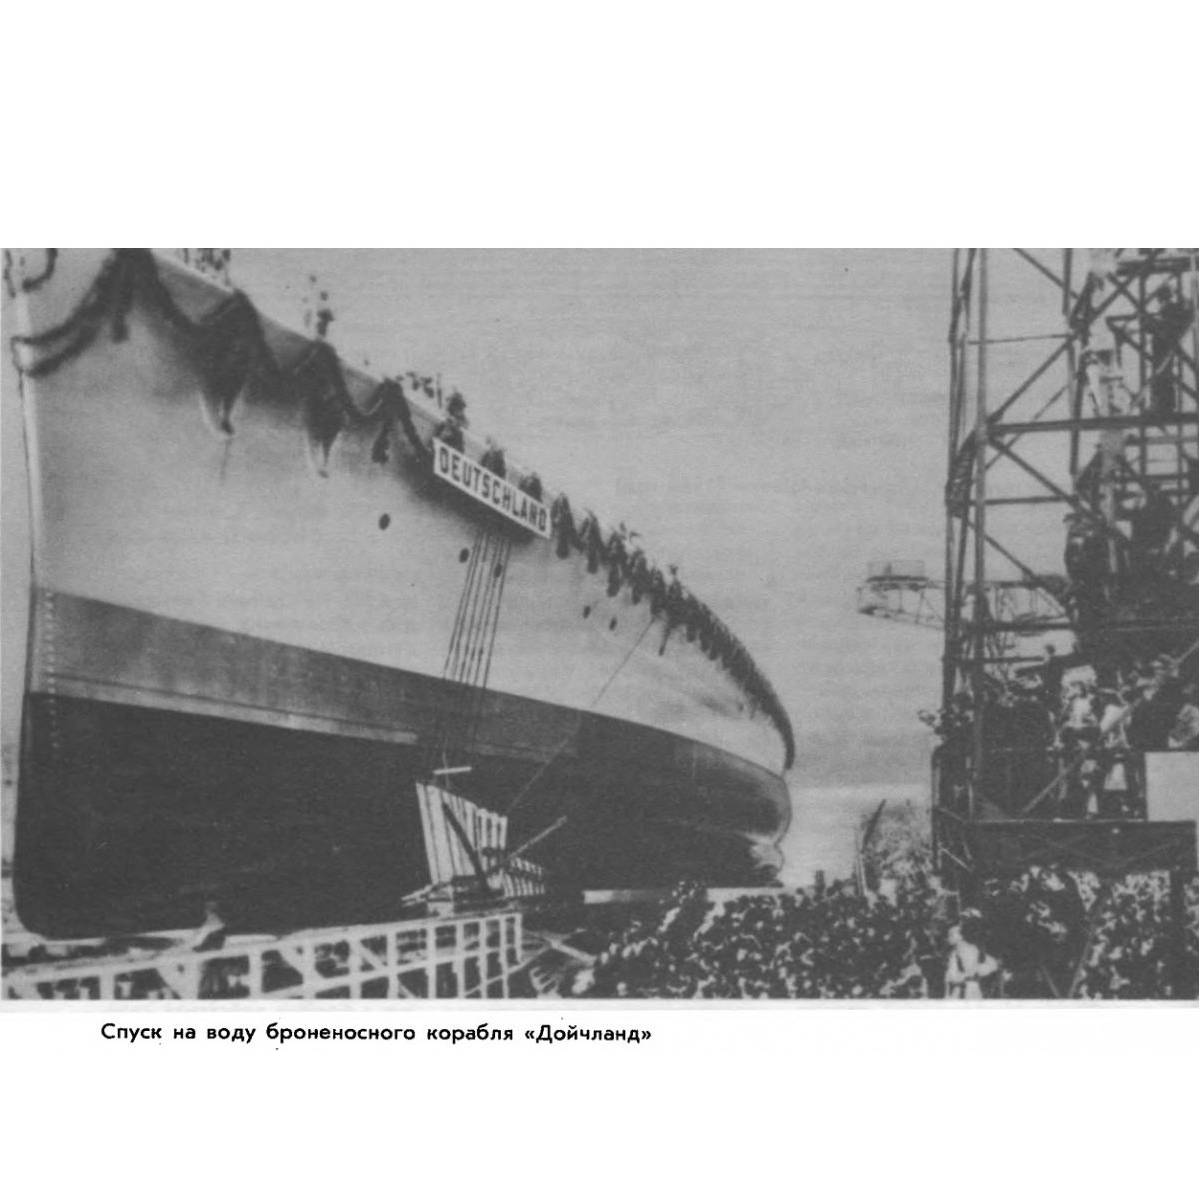 Кораблестроение и военно-морская теория Германии в 1920-1945 годах. Часть 1